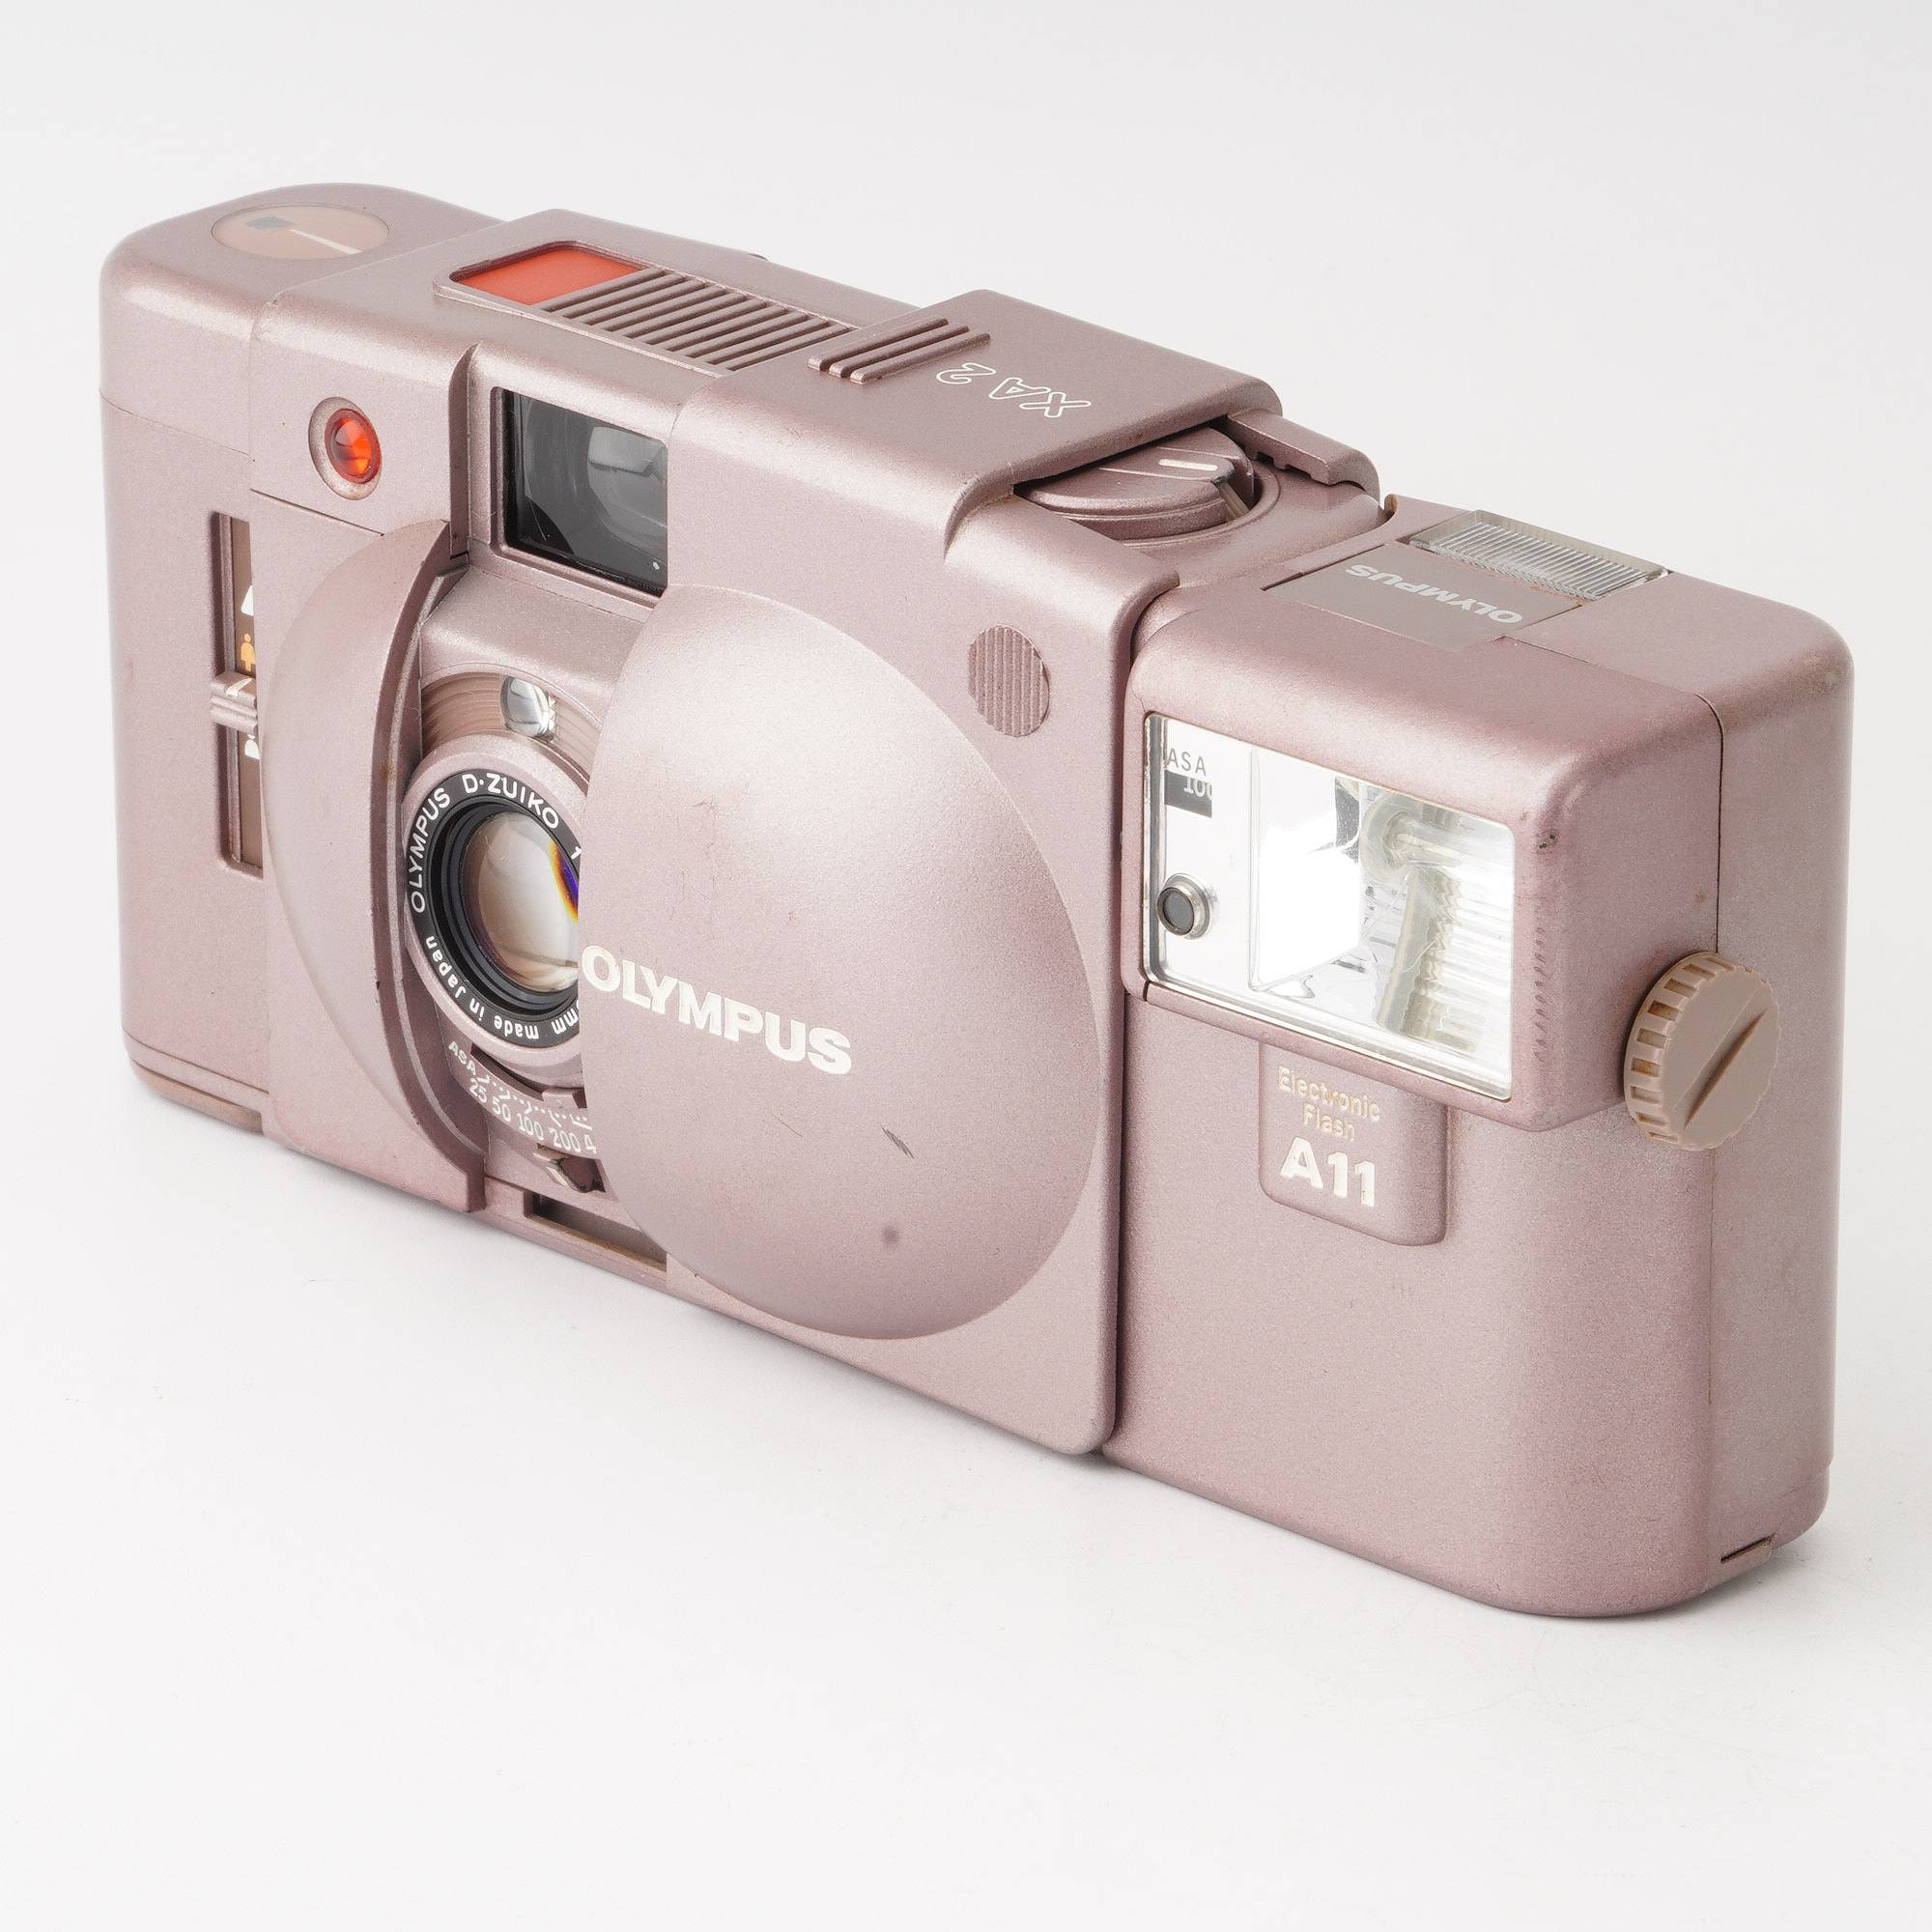 オリンパス OLYMPUS XA2 + A11 フラッシュワンタップカメラ - フィルム 